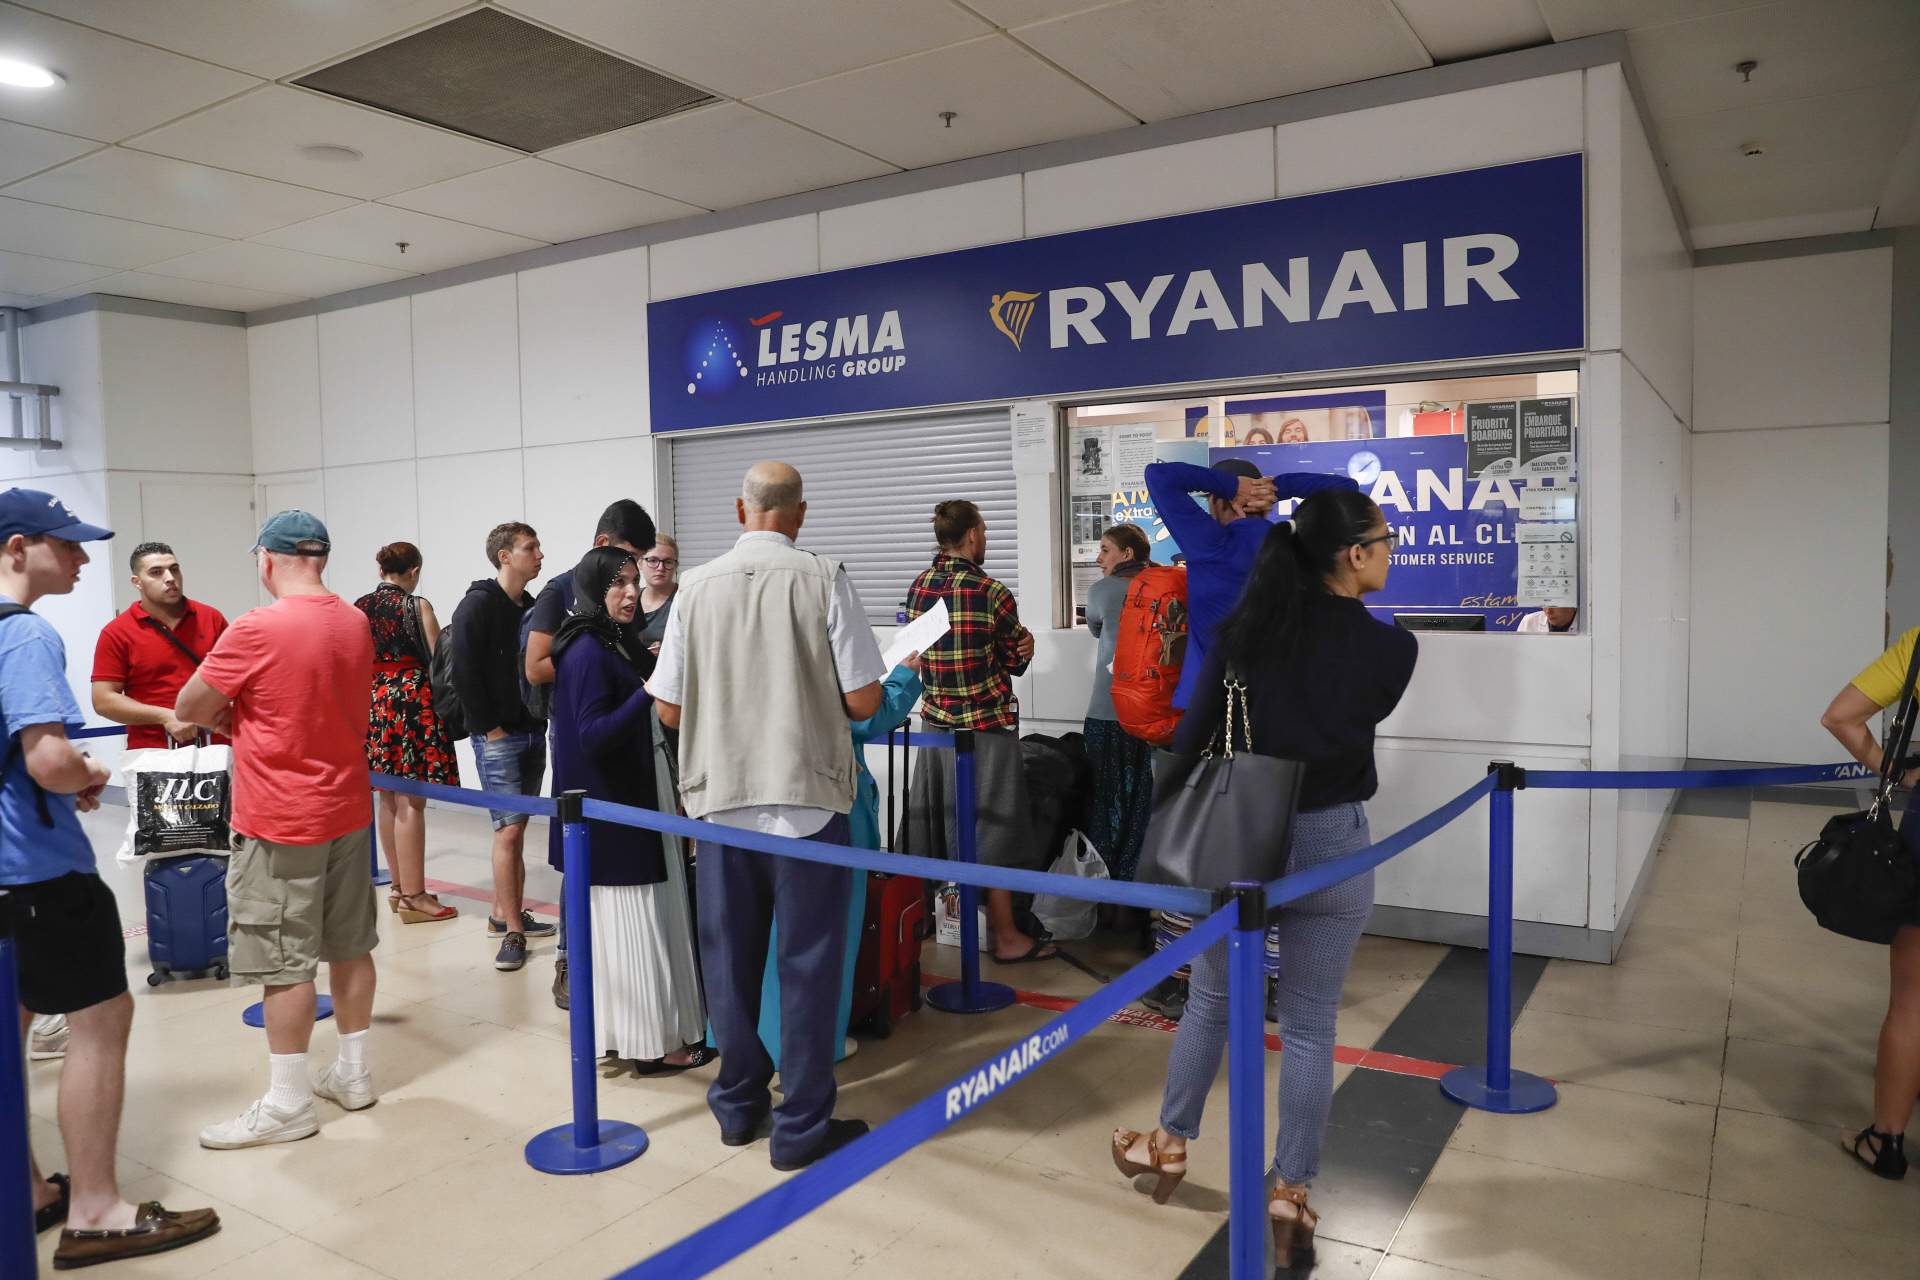 VIP de TV3 abandonada horas dentro del avión de Ryanair sin agua: "Nos engañan"